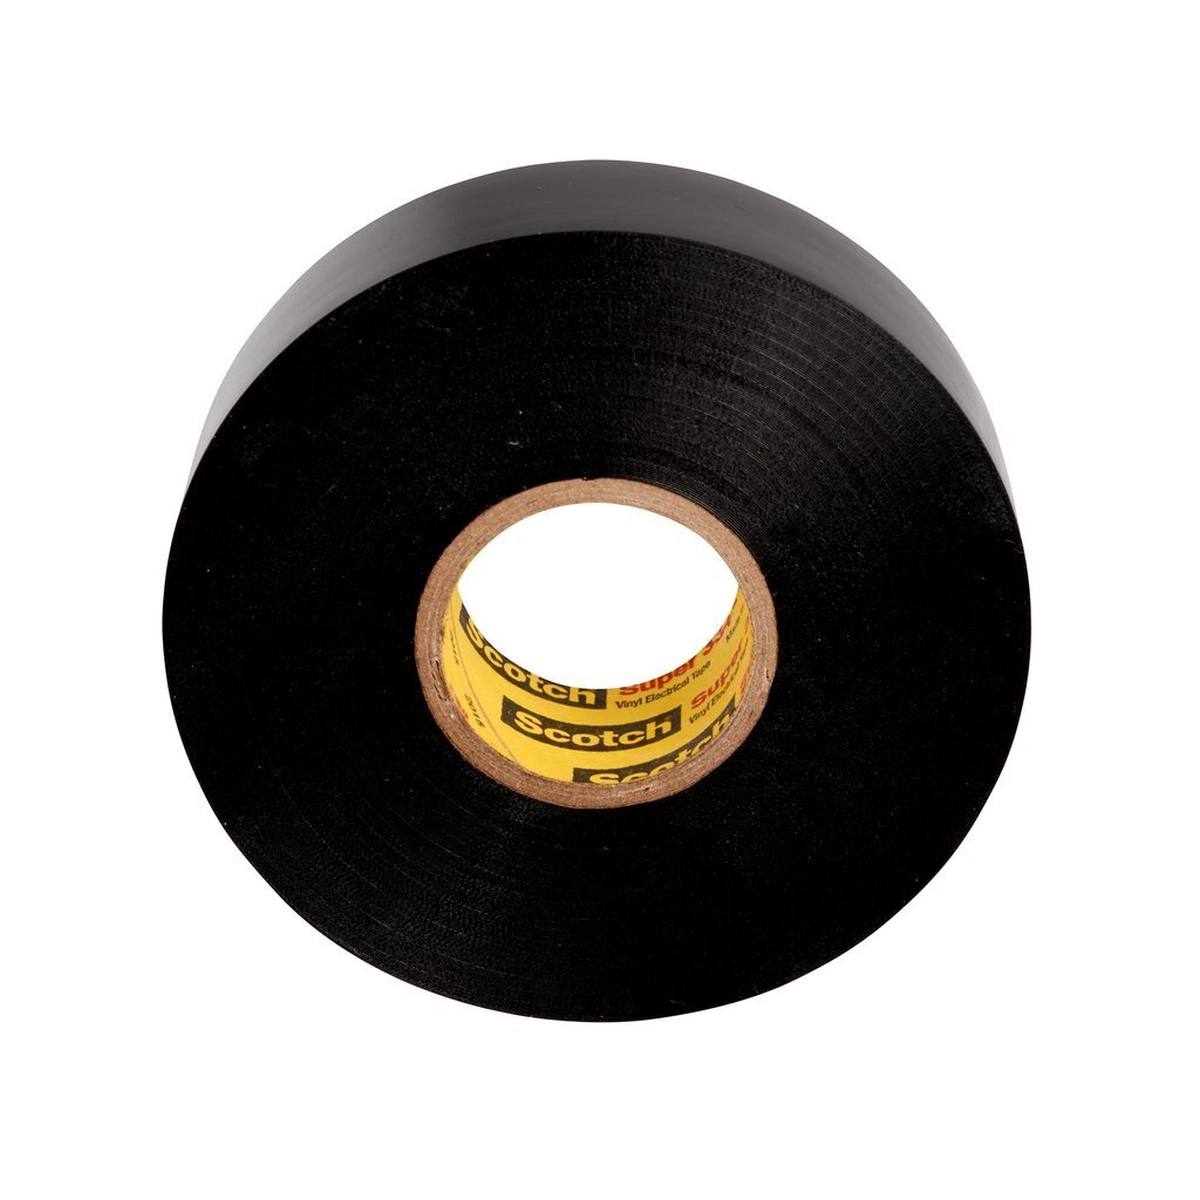 3M Scotch Super 33+ vinyl electrical insulating tape, black, 19 mm x 20 m, 0.18 mm